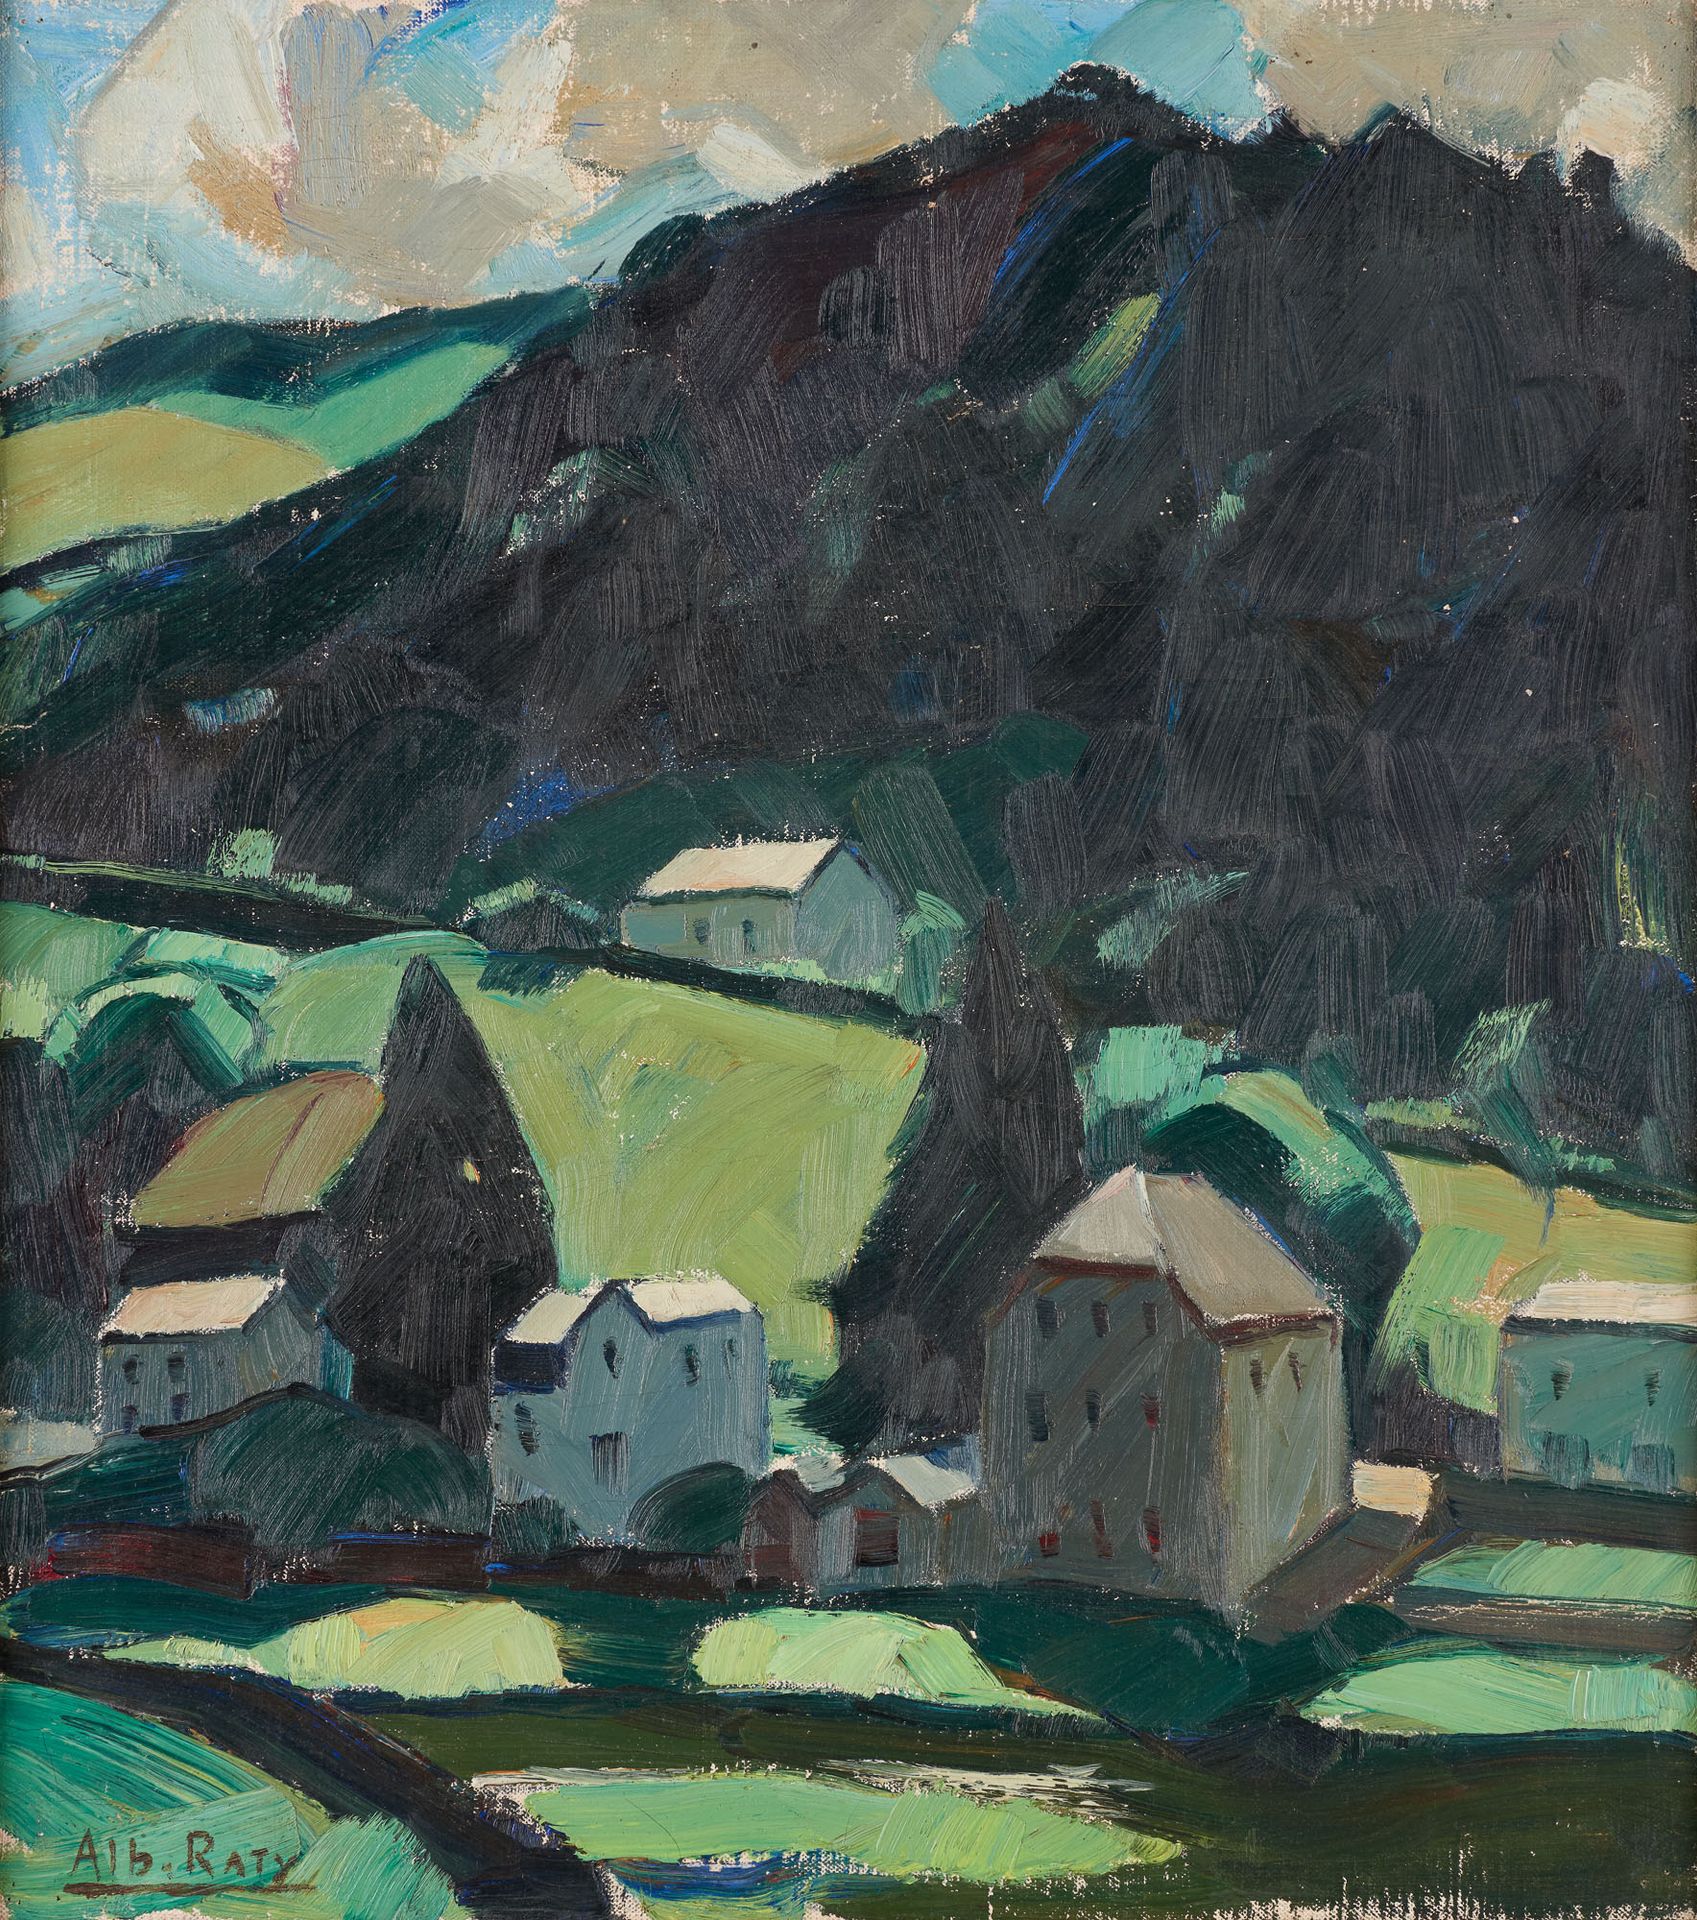 Albert RATY École belge (1889-1970) 布面油画：布永上的俯视。

签名：Alb.拉蒂。

尺寸：57 x 51厘米。

见插图&hellip;